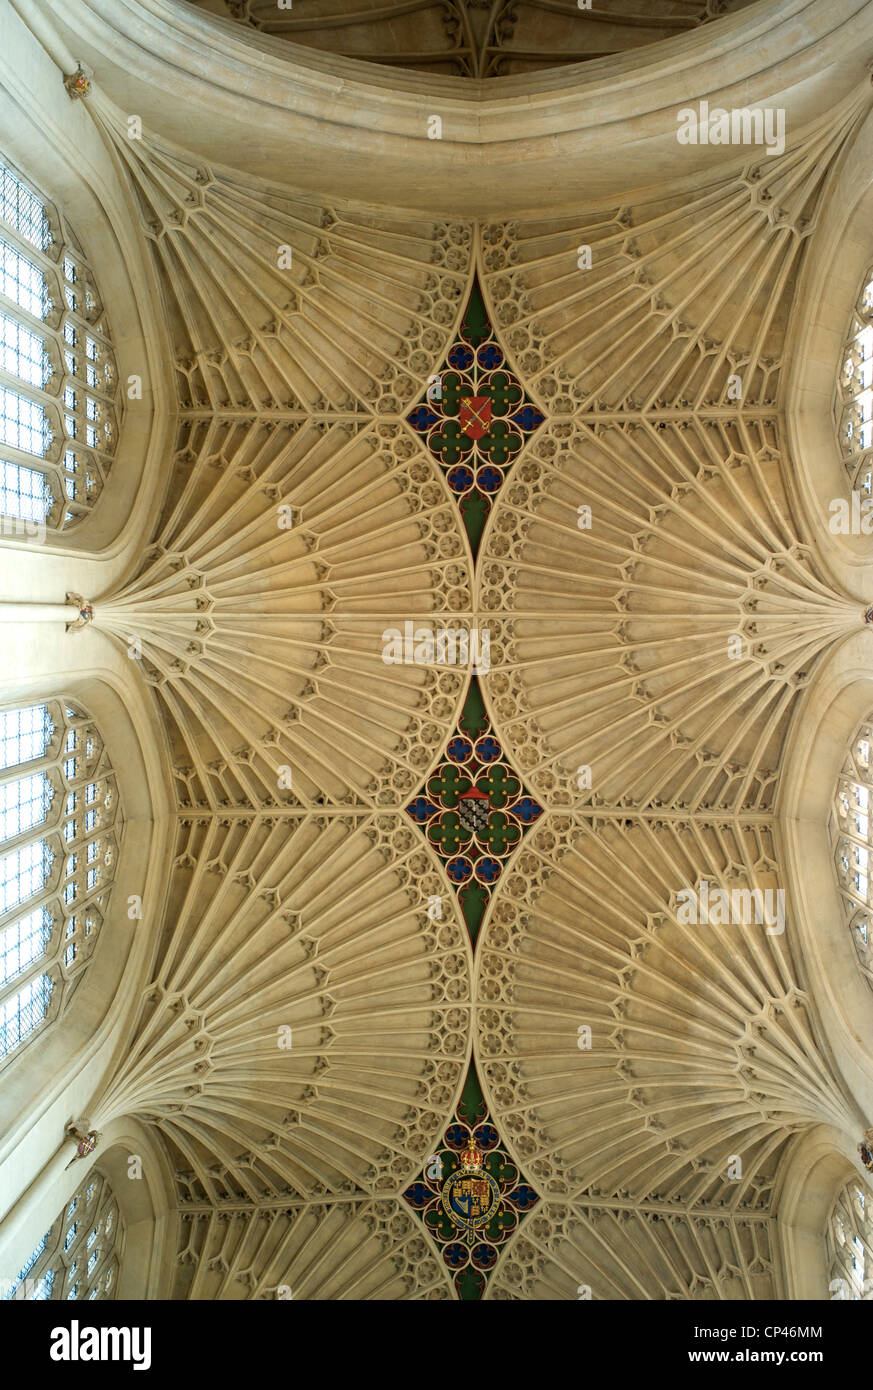 Ventilador de techo abovedado, la Abadía de Bath, RU Foto de stock